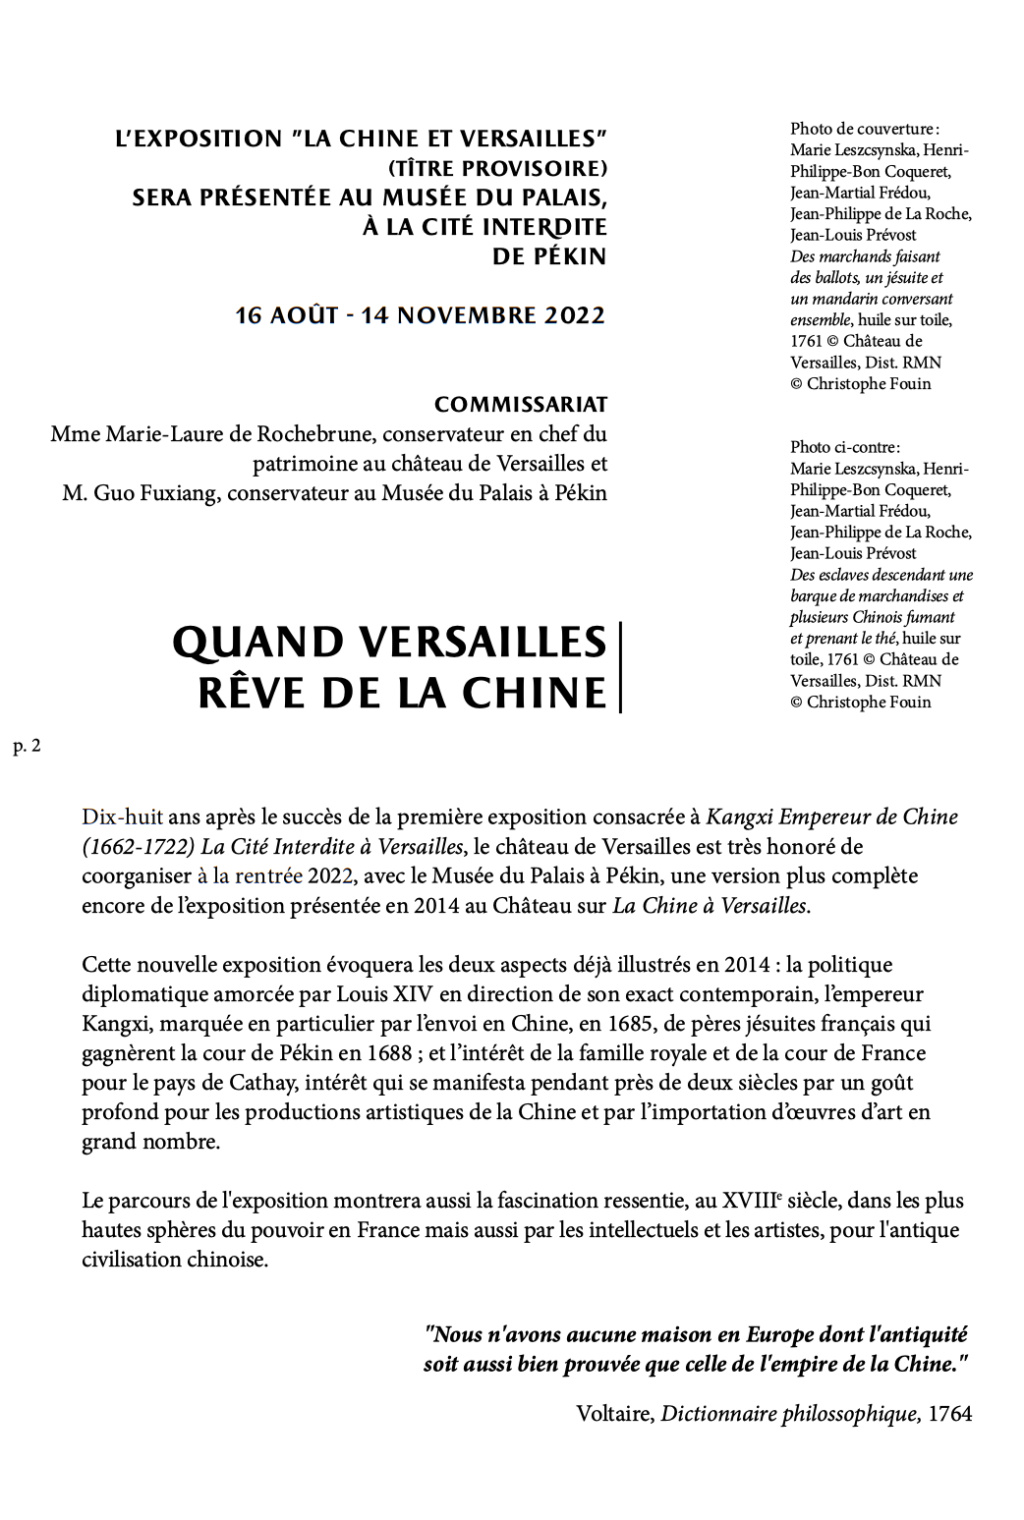 Expositions : La Chine à Versailles (2014 et 2022) - Page 2 Capt3741